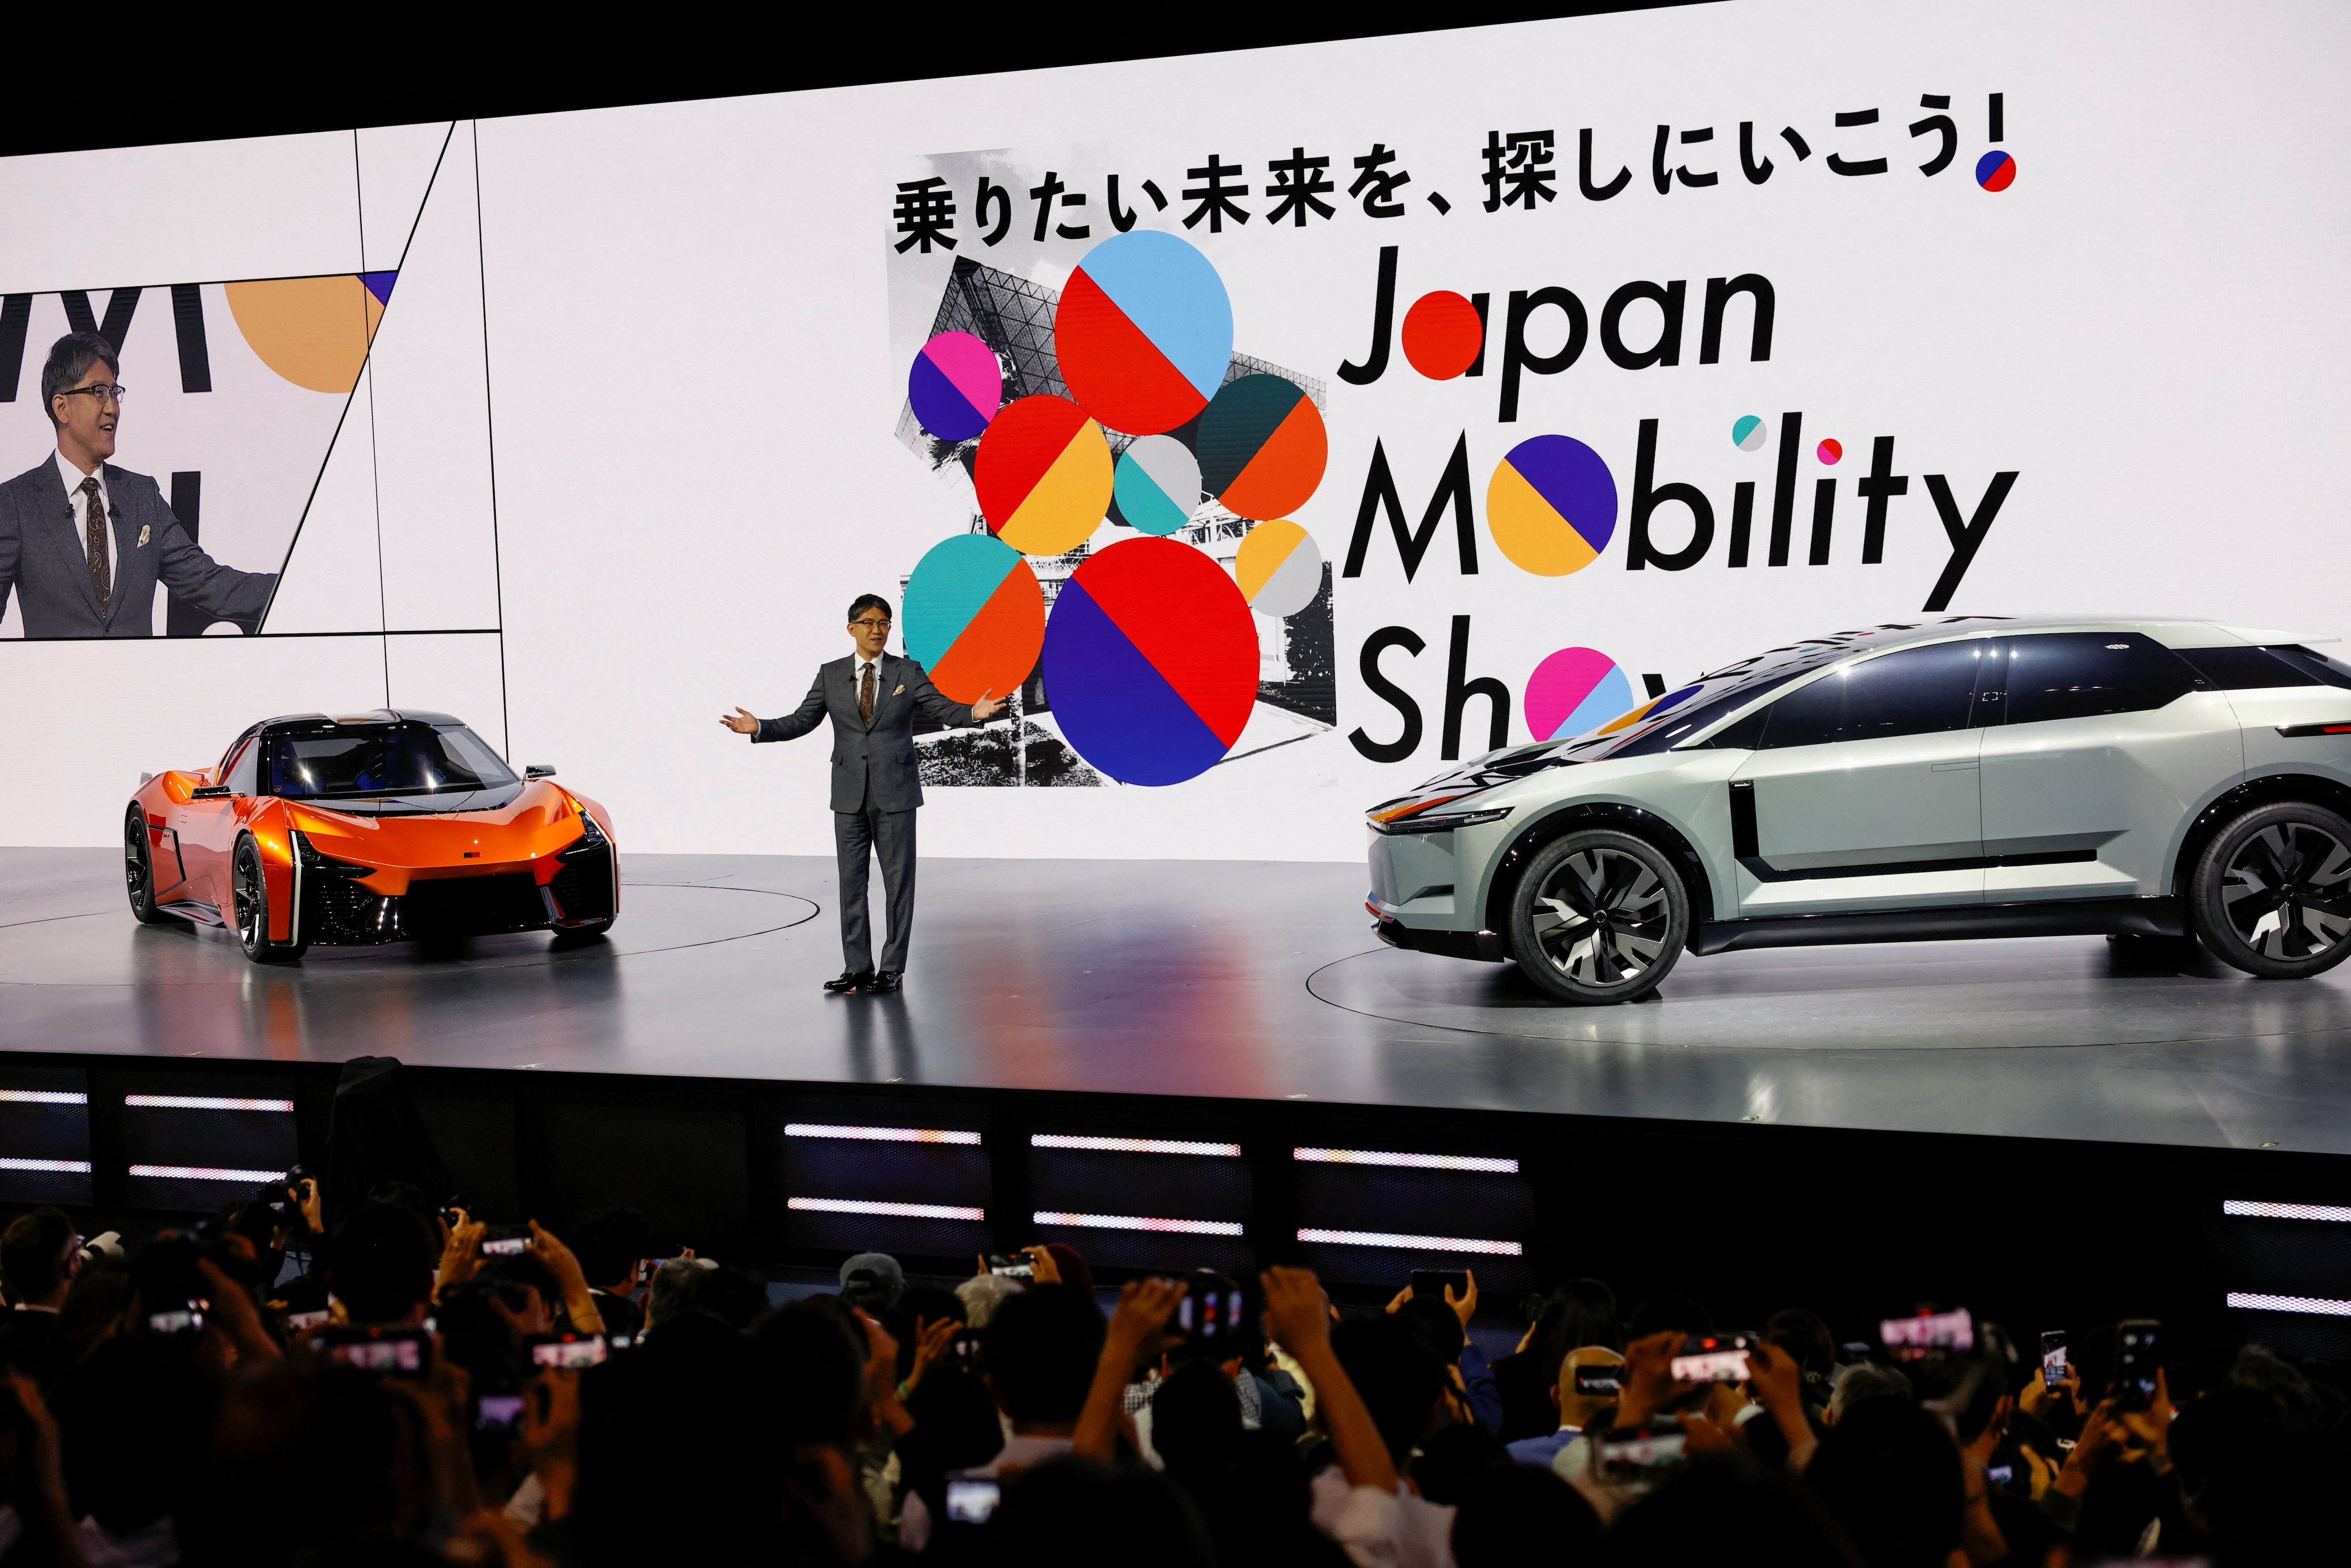 La industria japonesa tiene en Toyota, Honda y Nissan sus más grandes fabricantes, pero también cuenta con otras 5 marcas individuales.  REUTERS/Issei Kato